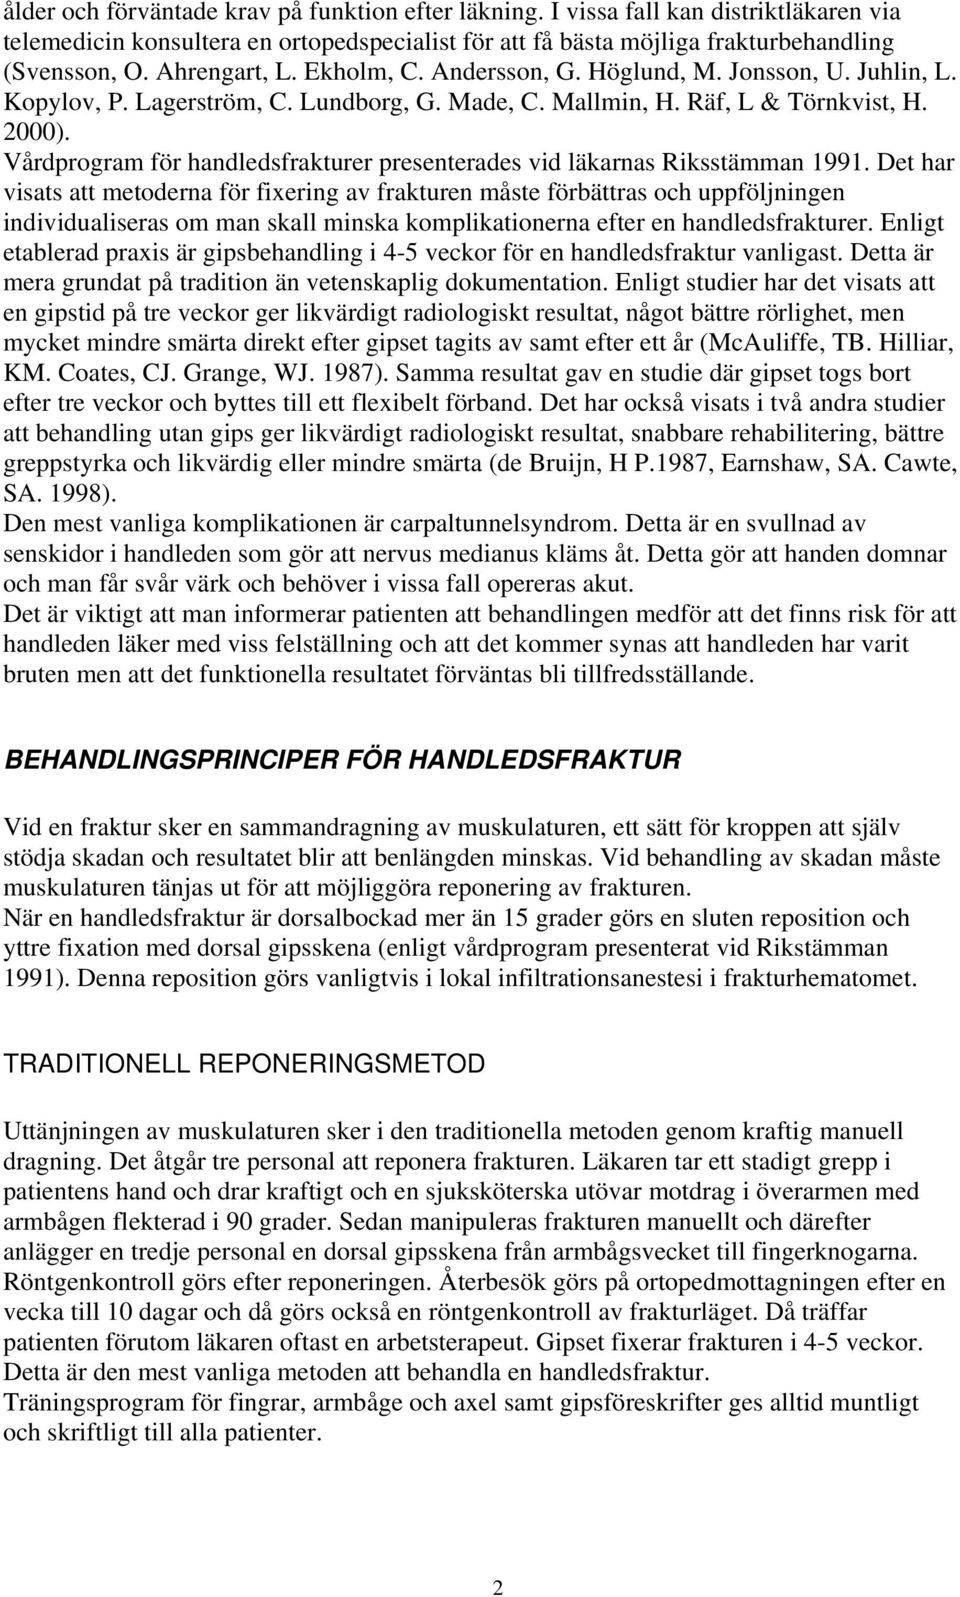 Vårdprogram för handledsfrakturer presenterades vid läkarnas Riksstämman 1991.